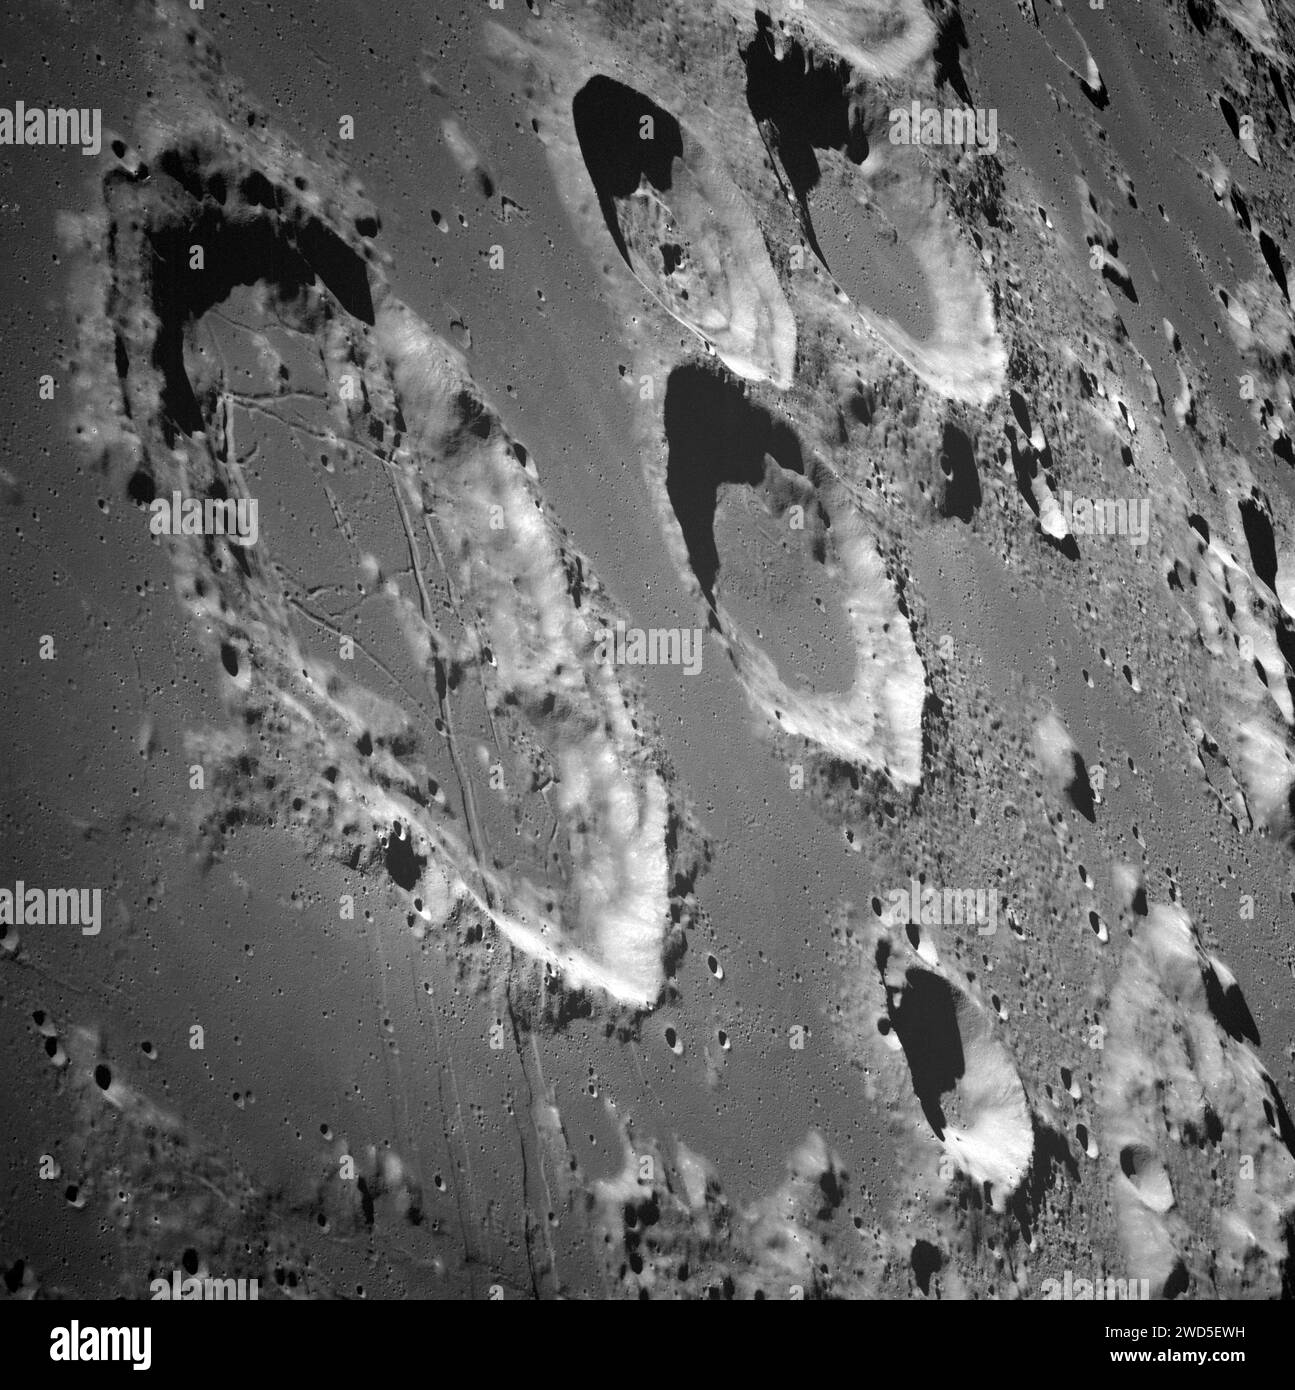 Vue de farside lunaire avec les cratères Goclenius (extrême gauche), Gutenberg D (en bas au centre), et trois cratères groupés Magelhaens, Magelhaens A, et Colombo A, photographiés à partir de la sonde Apollo 8, Johnson Space Center, NASA , 24 décembre 1968 Banque D'Images